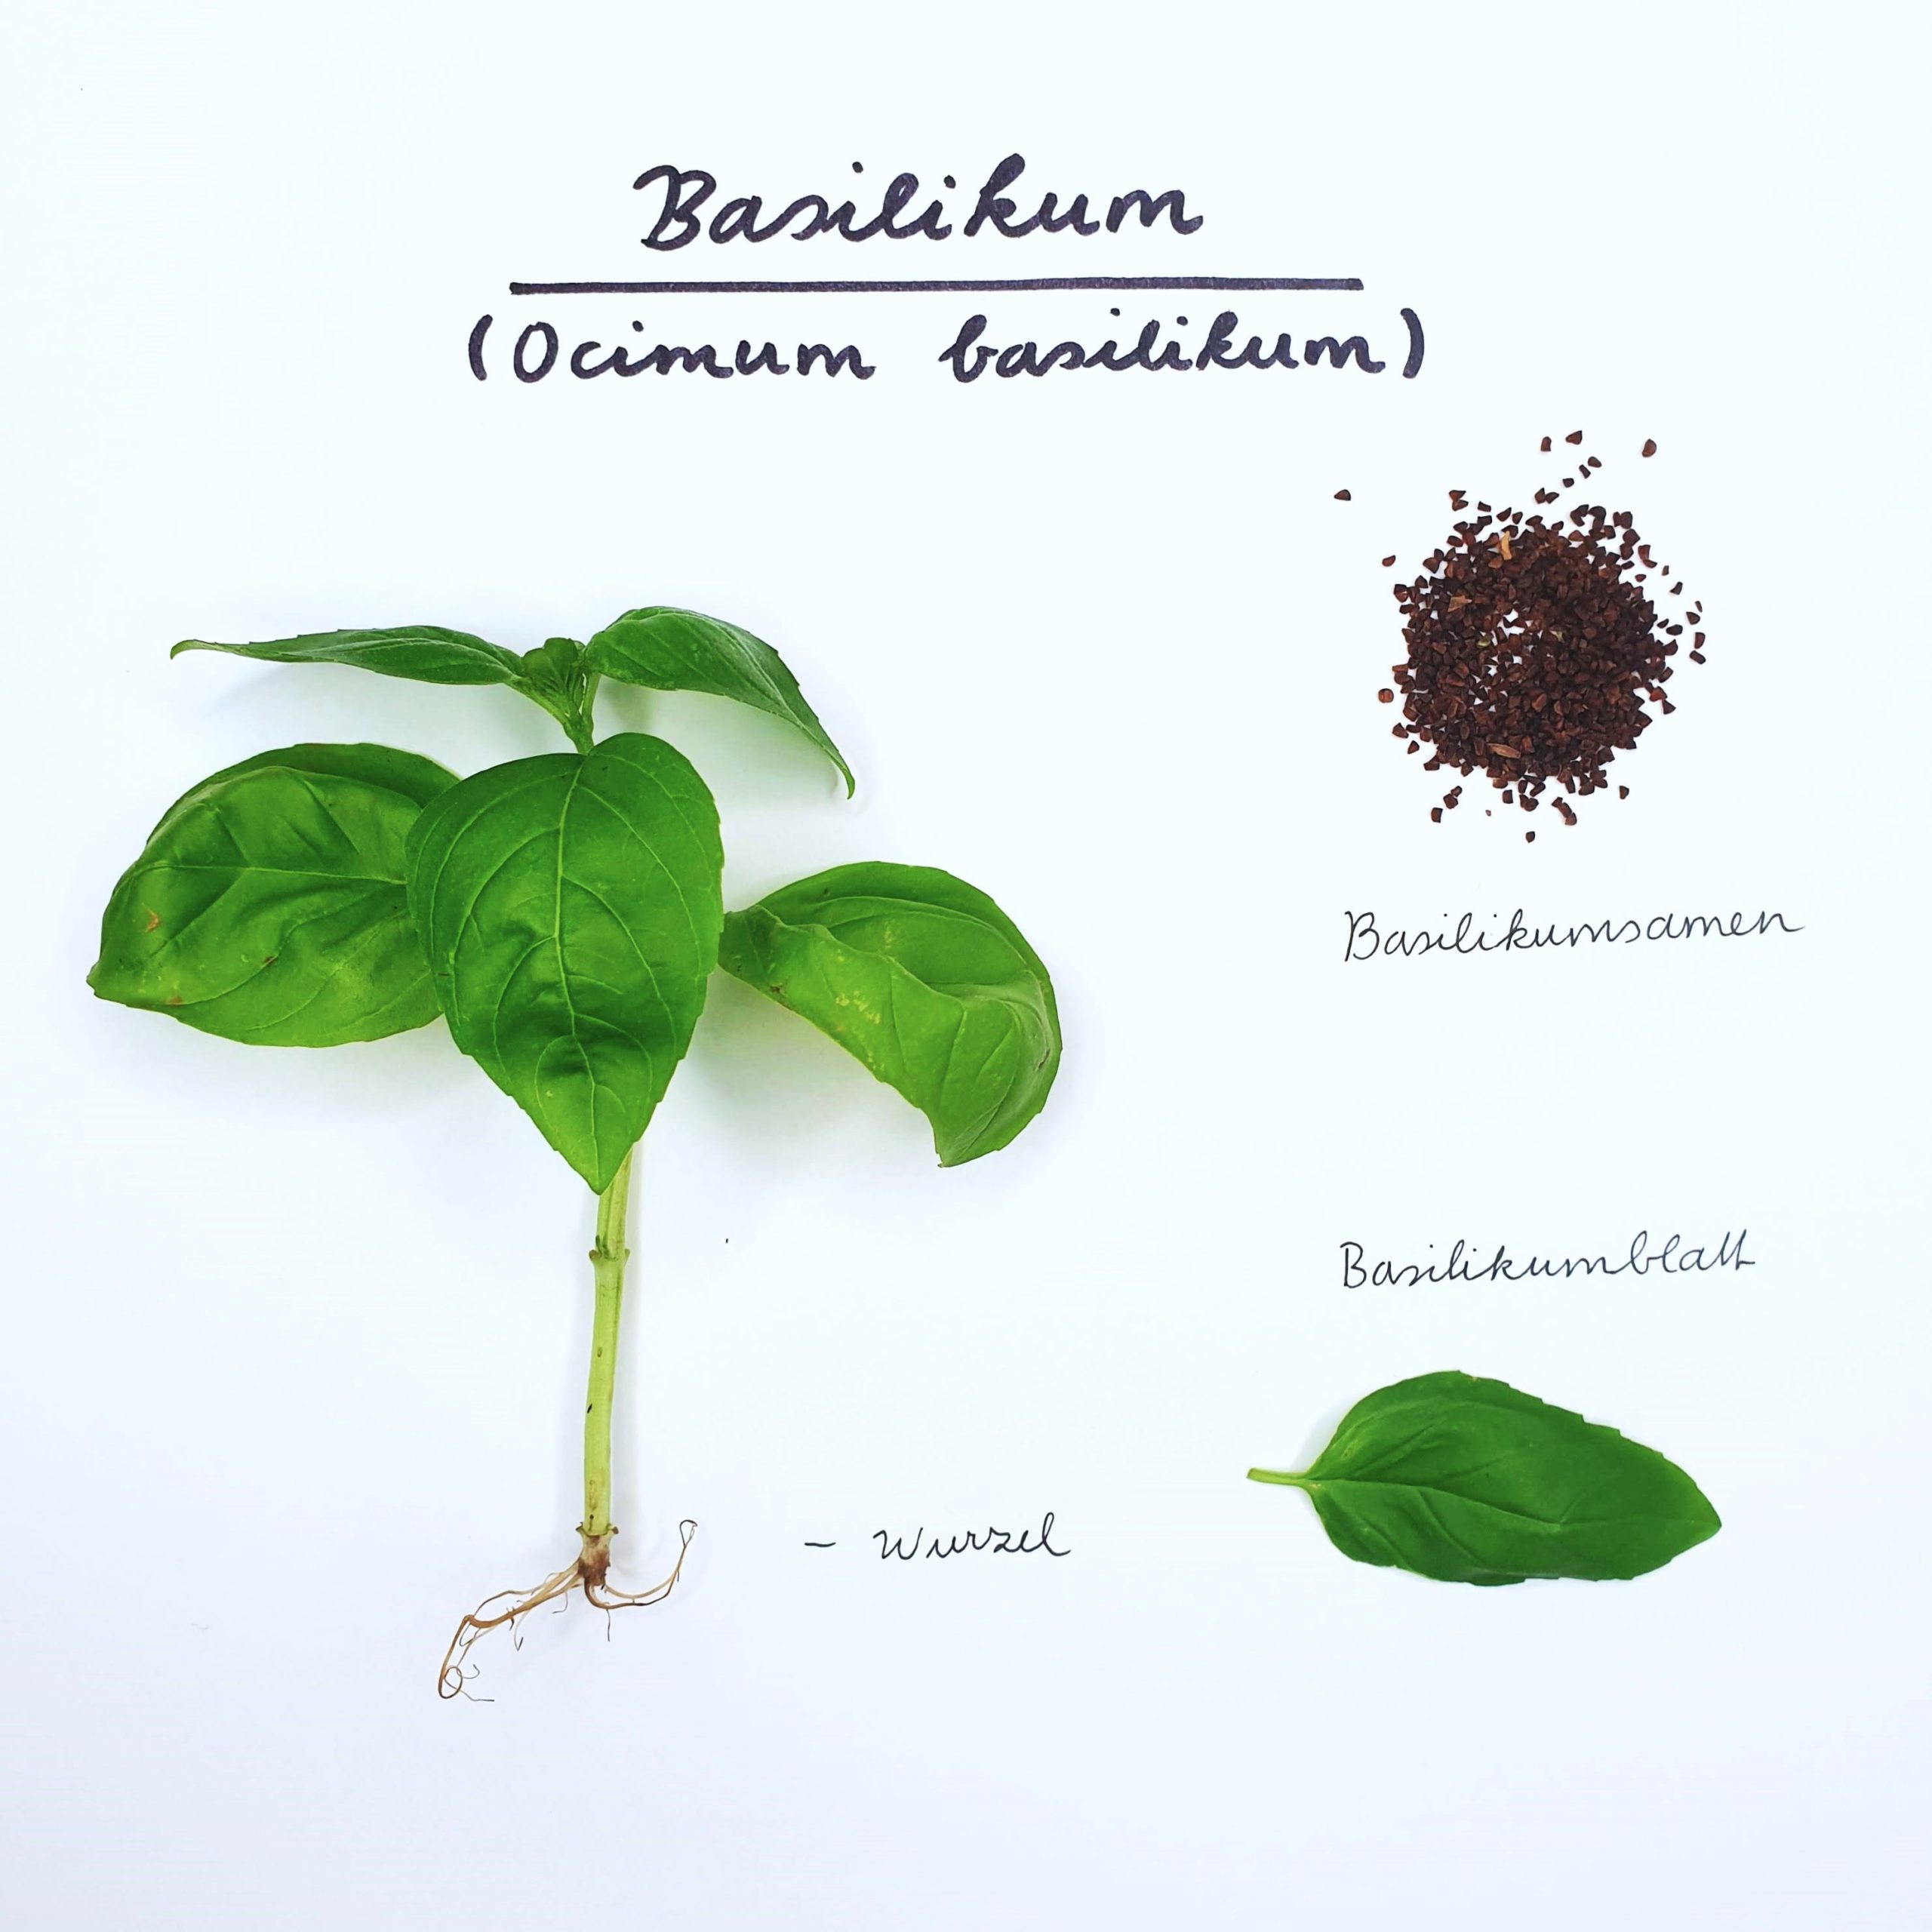 Basilikum als Heilpflanze